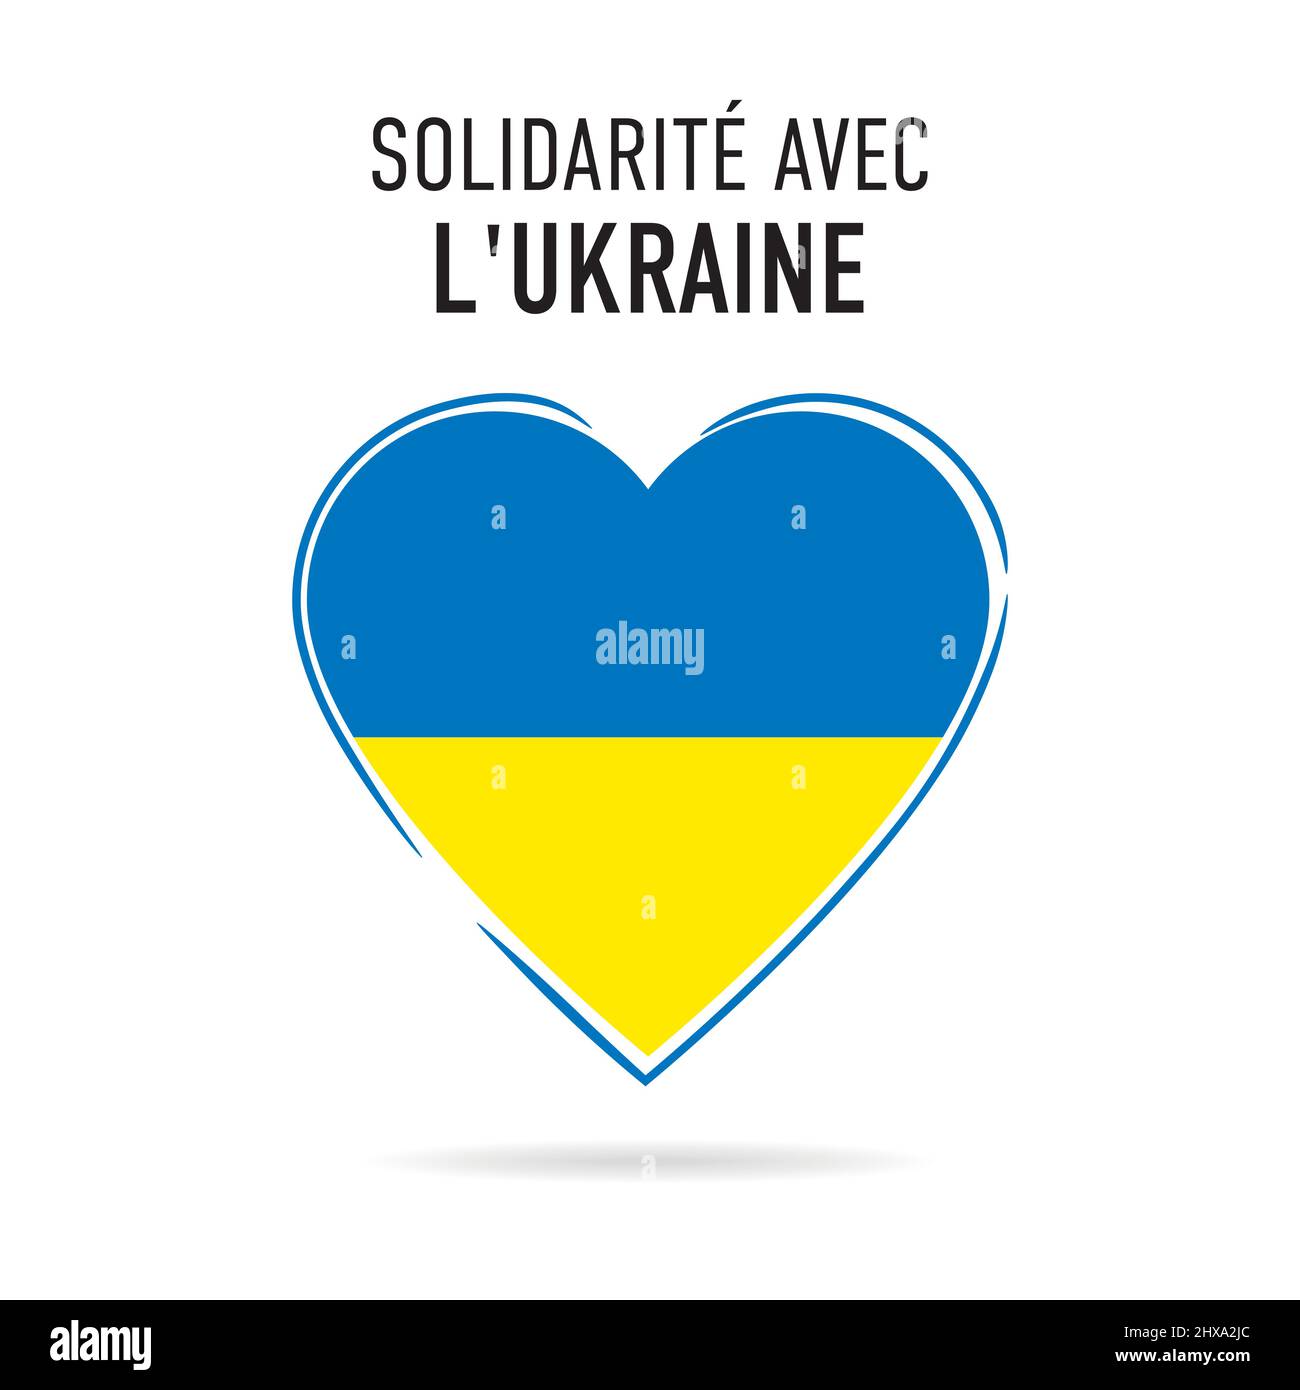 Solidarité avec l'ukraine - Corazón con colores de la bandera ucraniana. Lengua francesa. Traducción: Solidaridad con Ucrania Ilustración del Vector